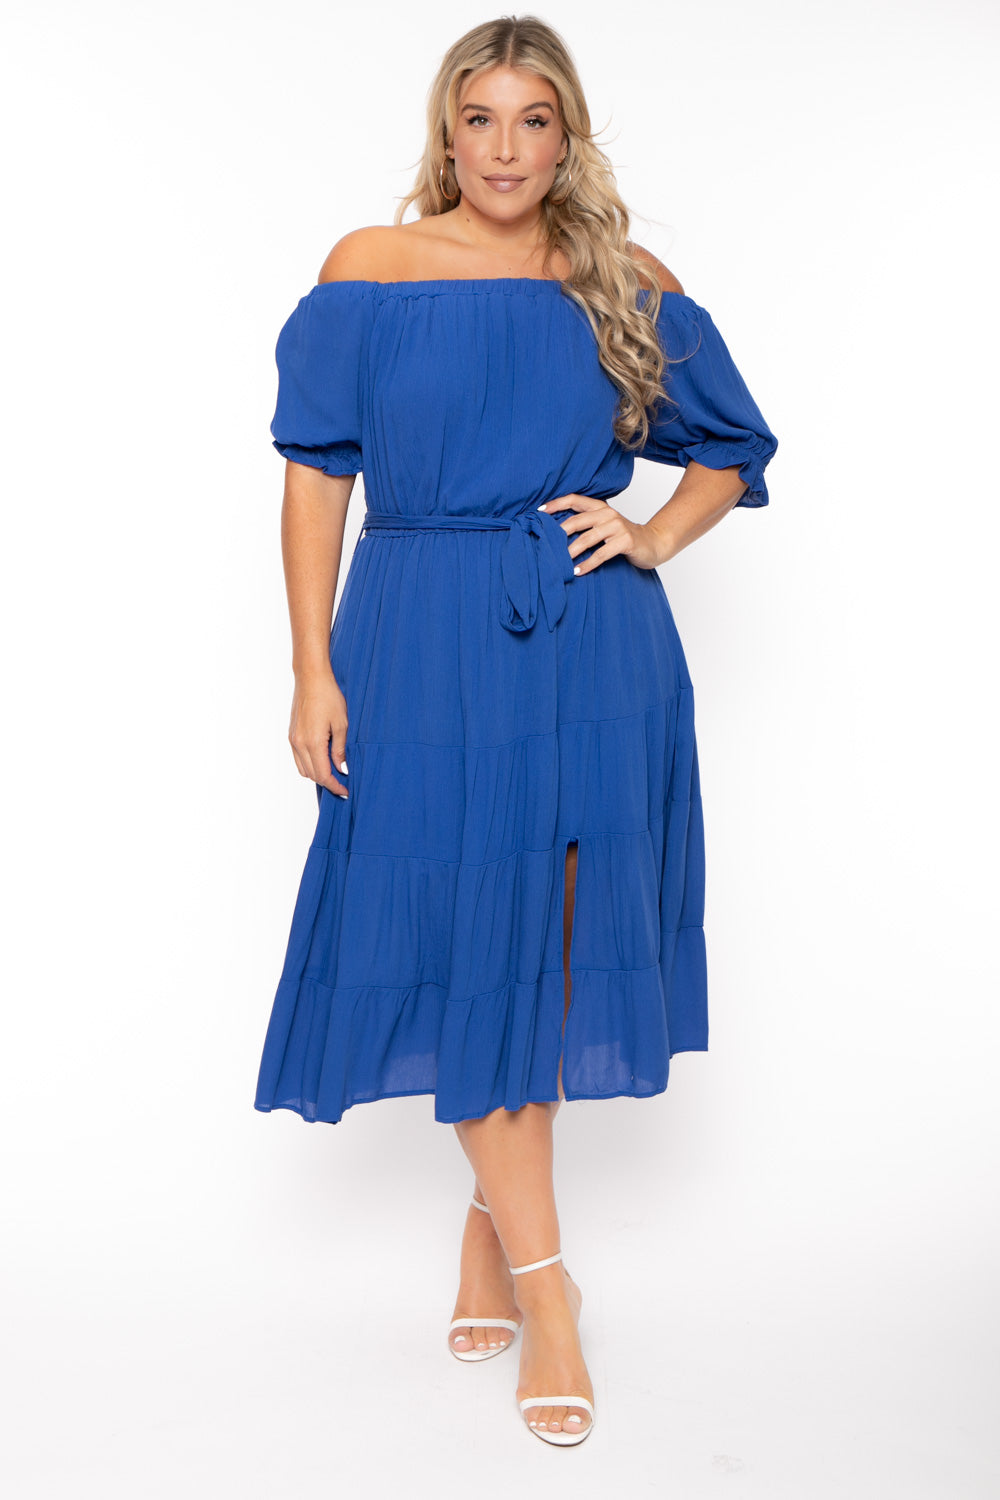 BY DESIGN Dresses 1X / Blue Plus Size Daniela Off Shoulder Dress - Blue